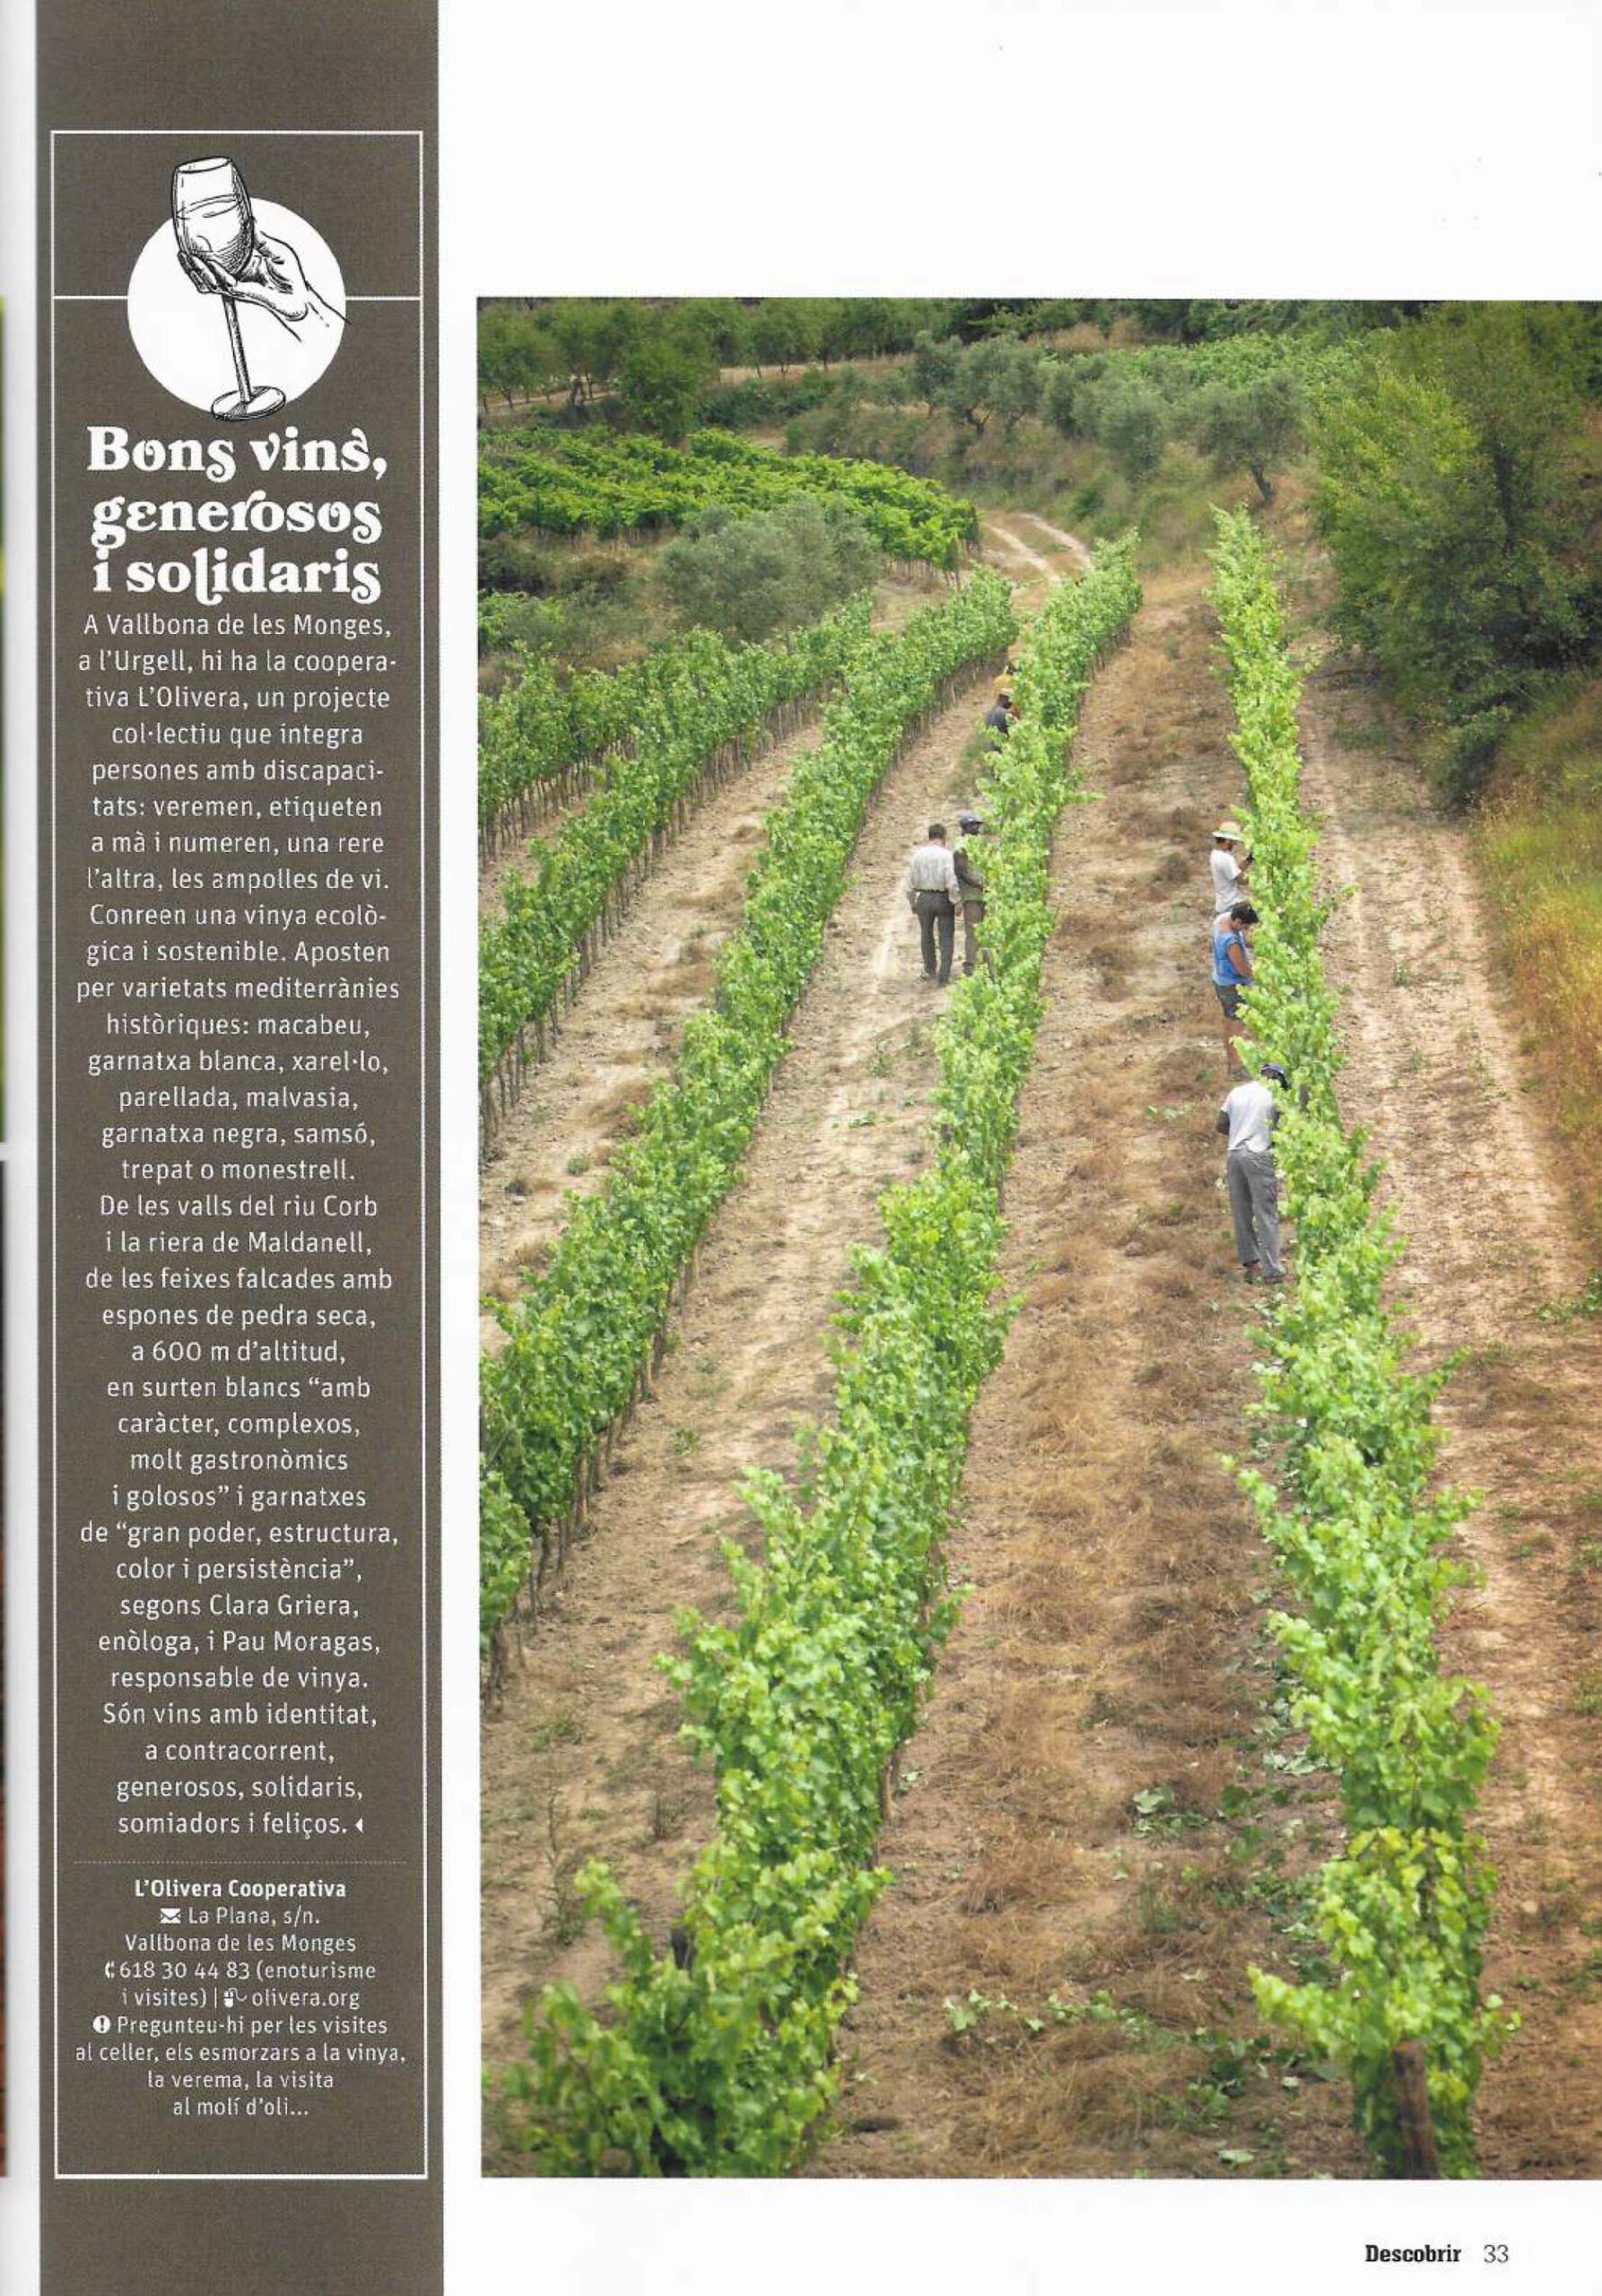 Artículo de la Revista Descubrir con la foto de los campos